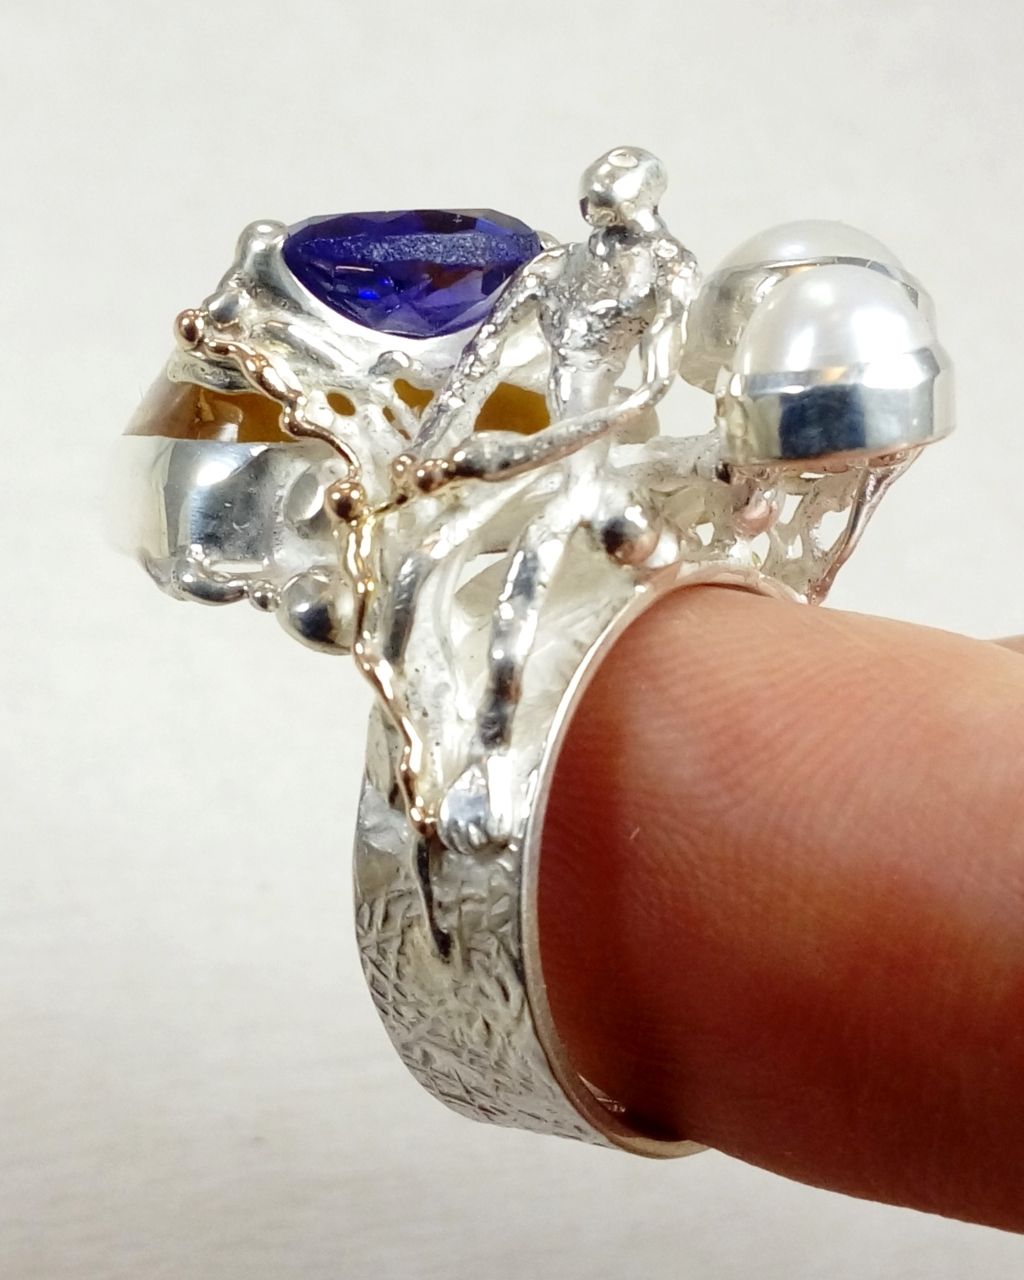 gregory pyra piro skulpturell ring, smykker med levering i Oslo, smykker med levering i Norge, håndlaget ring laget av håndverker, ring med rav og ametyst, ring med ametyst og perle, ring laget av sølv og gull, ring solgt i kunstgalleri